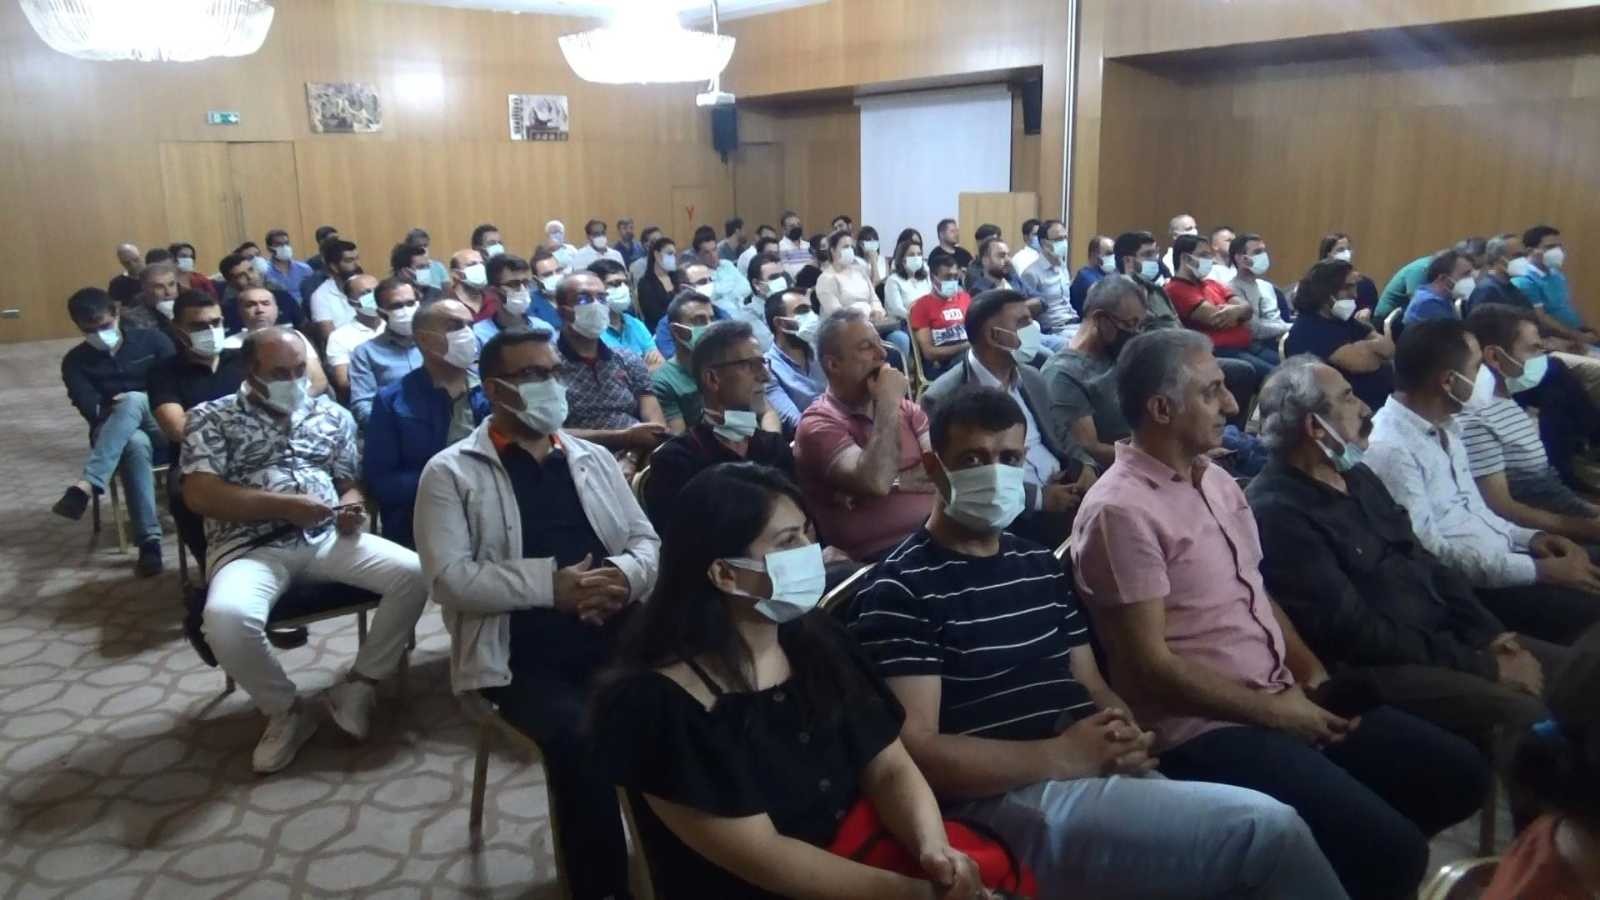 Özel Bower Hastanesi, aile hekimlerini eğitim toplantısında buluşturdu #diyarbakir